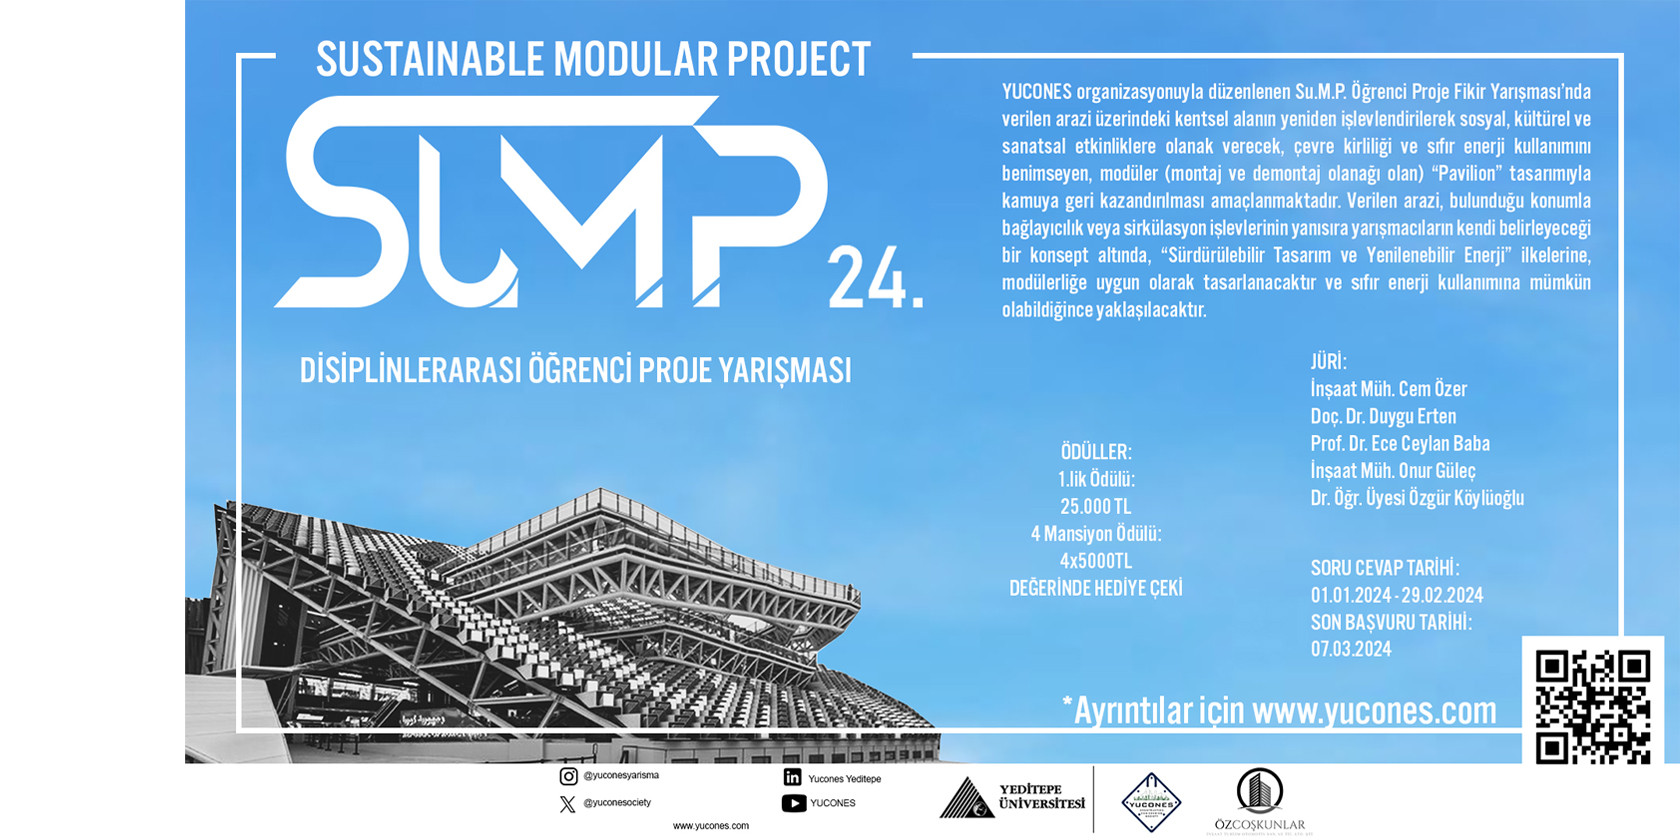 Sustainable Modular Project (SU.M.P.) Disiplinler Arası Öğrenci Proje Yarışması